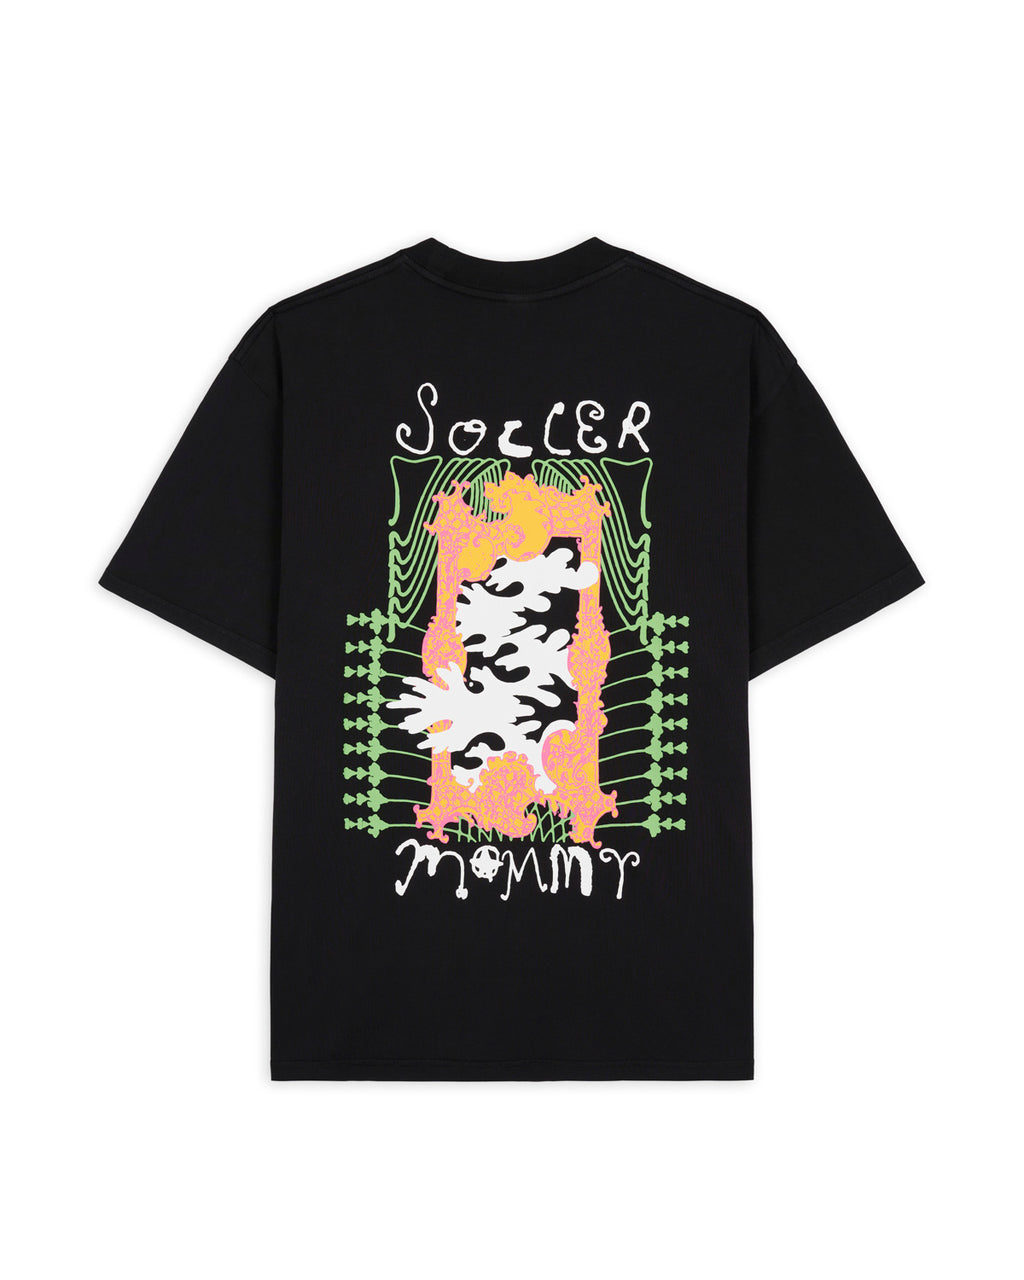 Soccer Mommy T-Shirt - Black 2